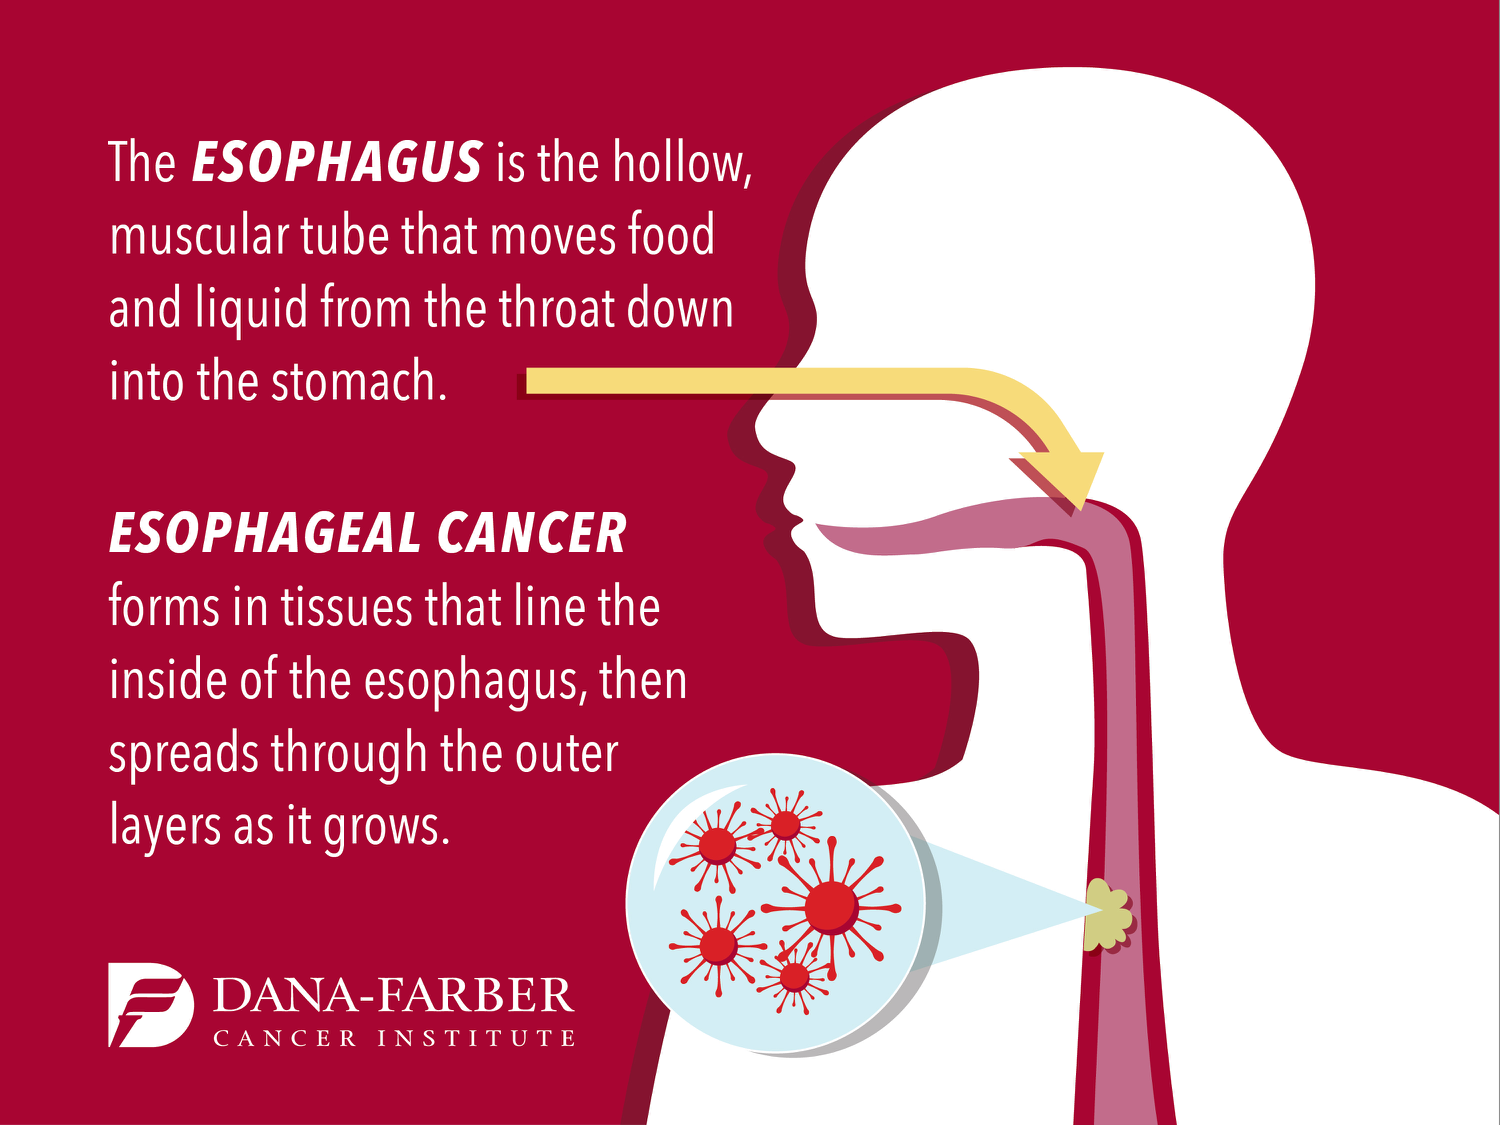 Famosos con cancer de esofago